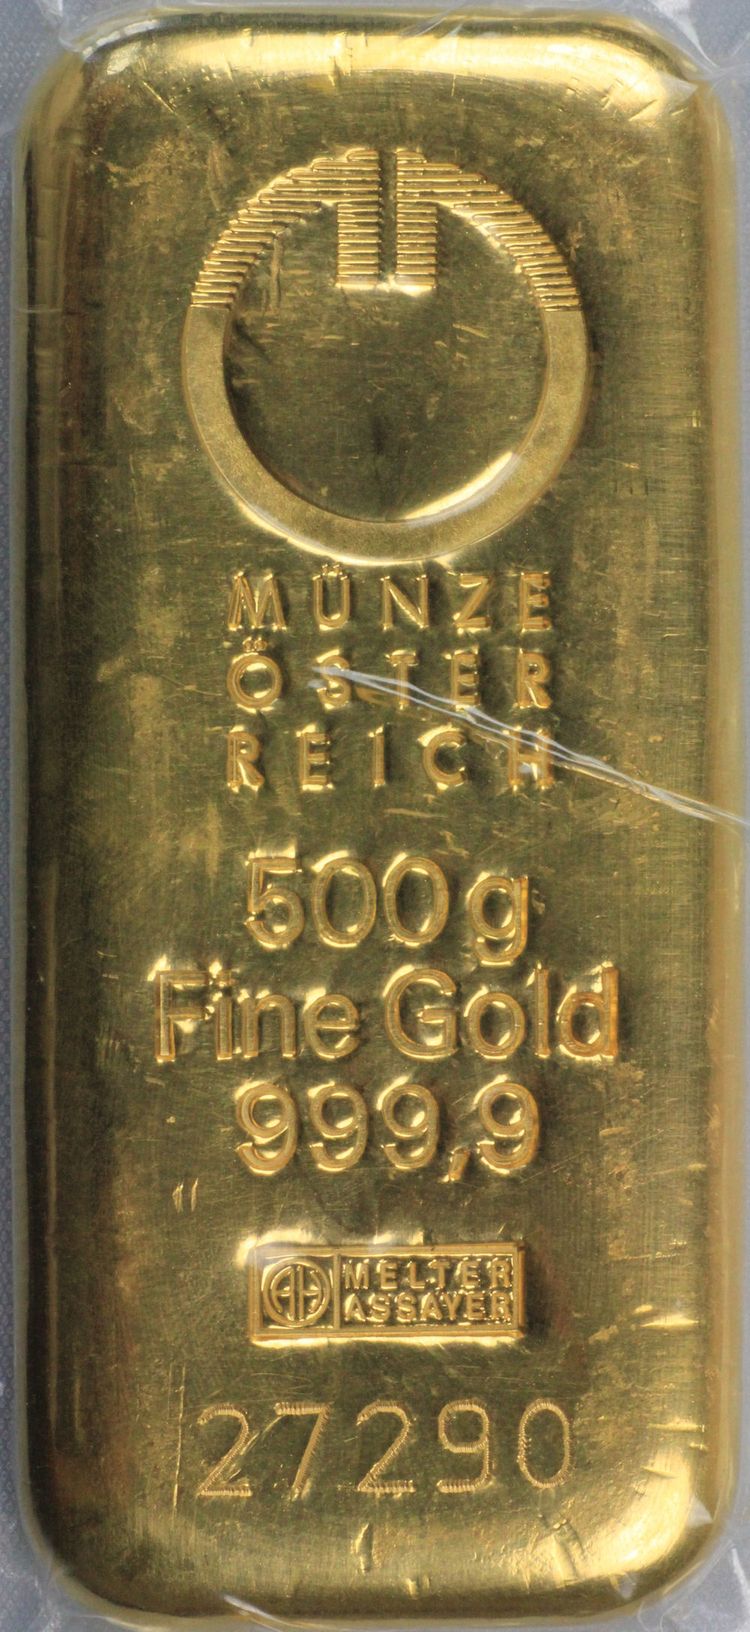 500g Goldbarren aus der Münze Österreich Prägung